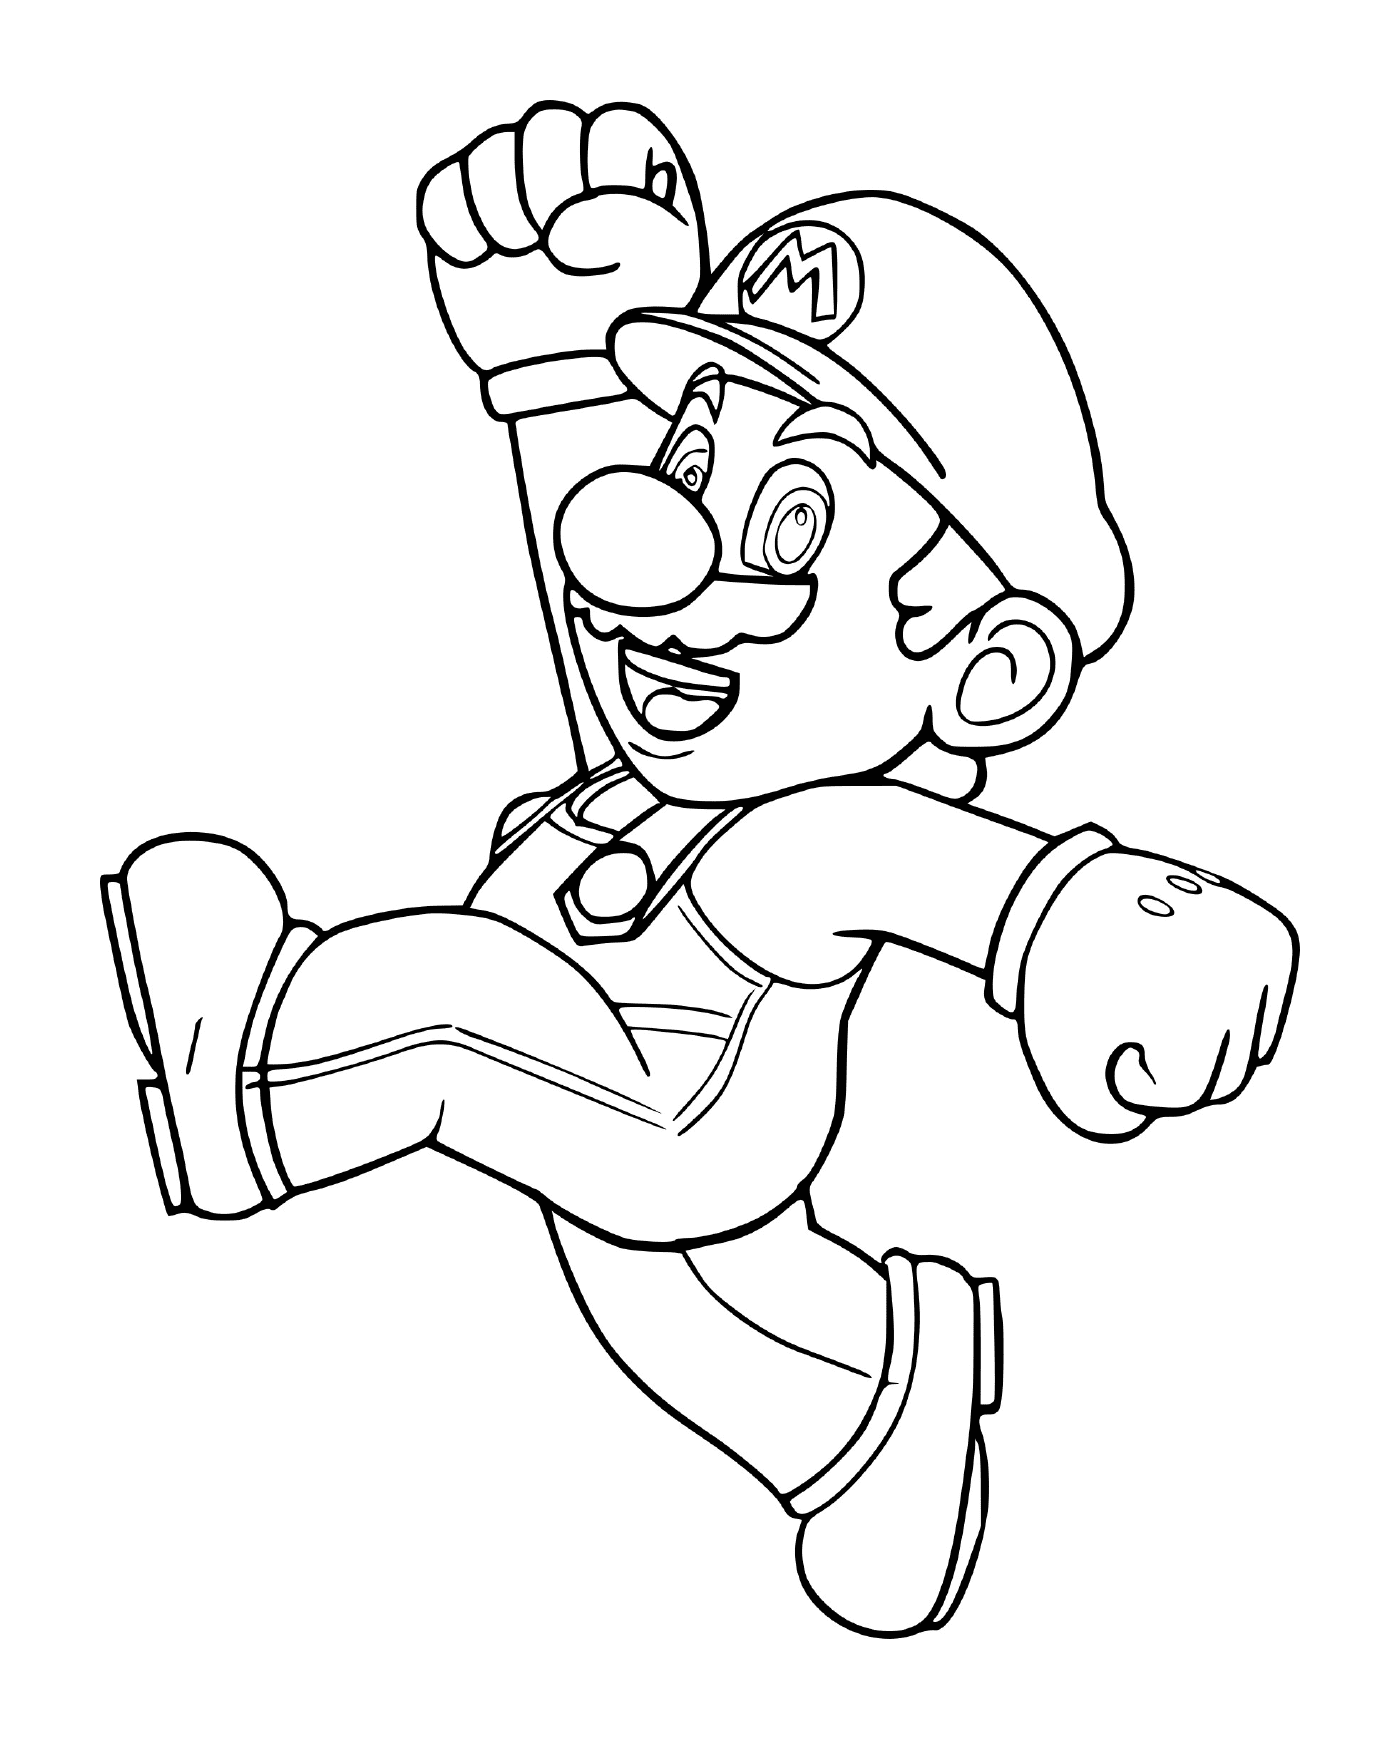   Mario Bros original, un homme qui court 